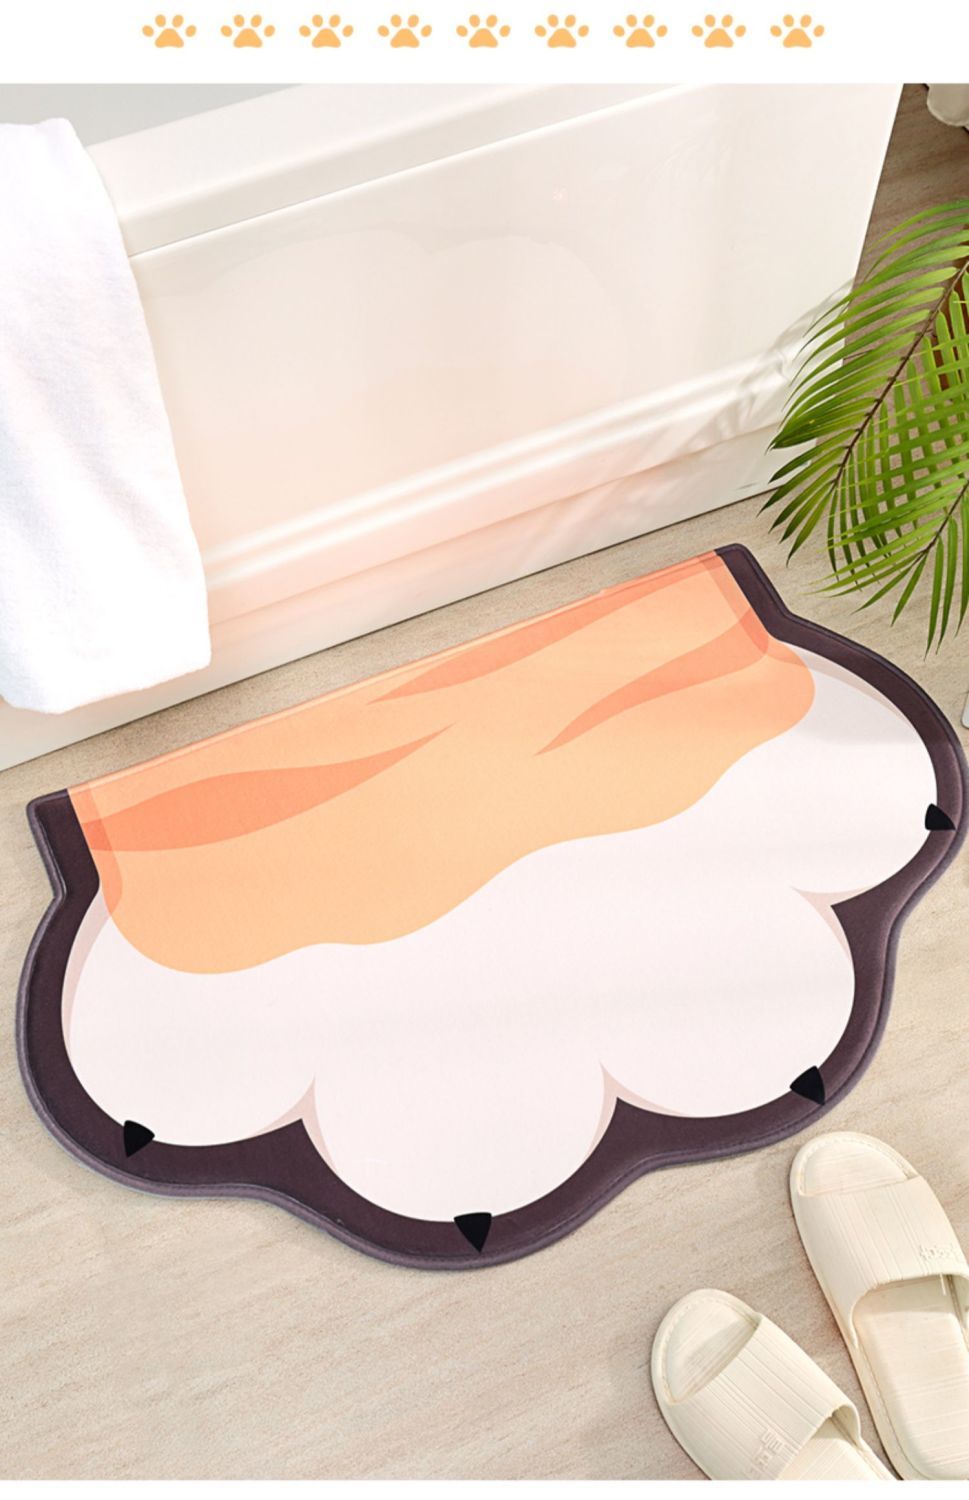 吸水地垫浴室防滑垫家用可爱地毯门垫进门厕所门口脚垫卫生间地垫